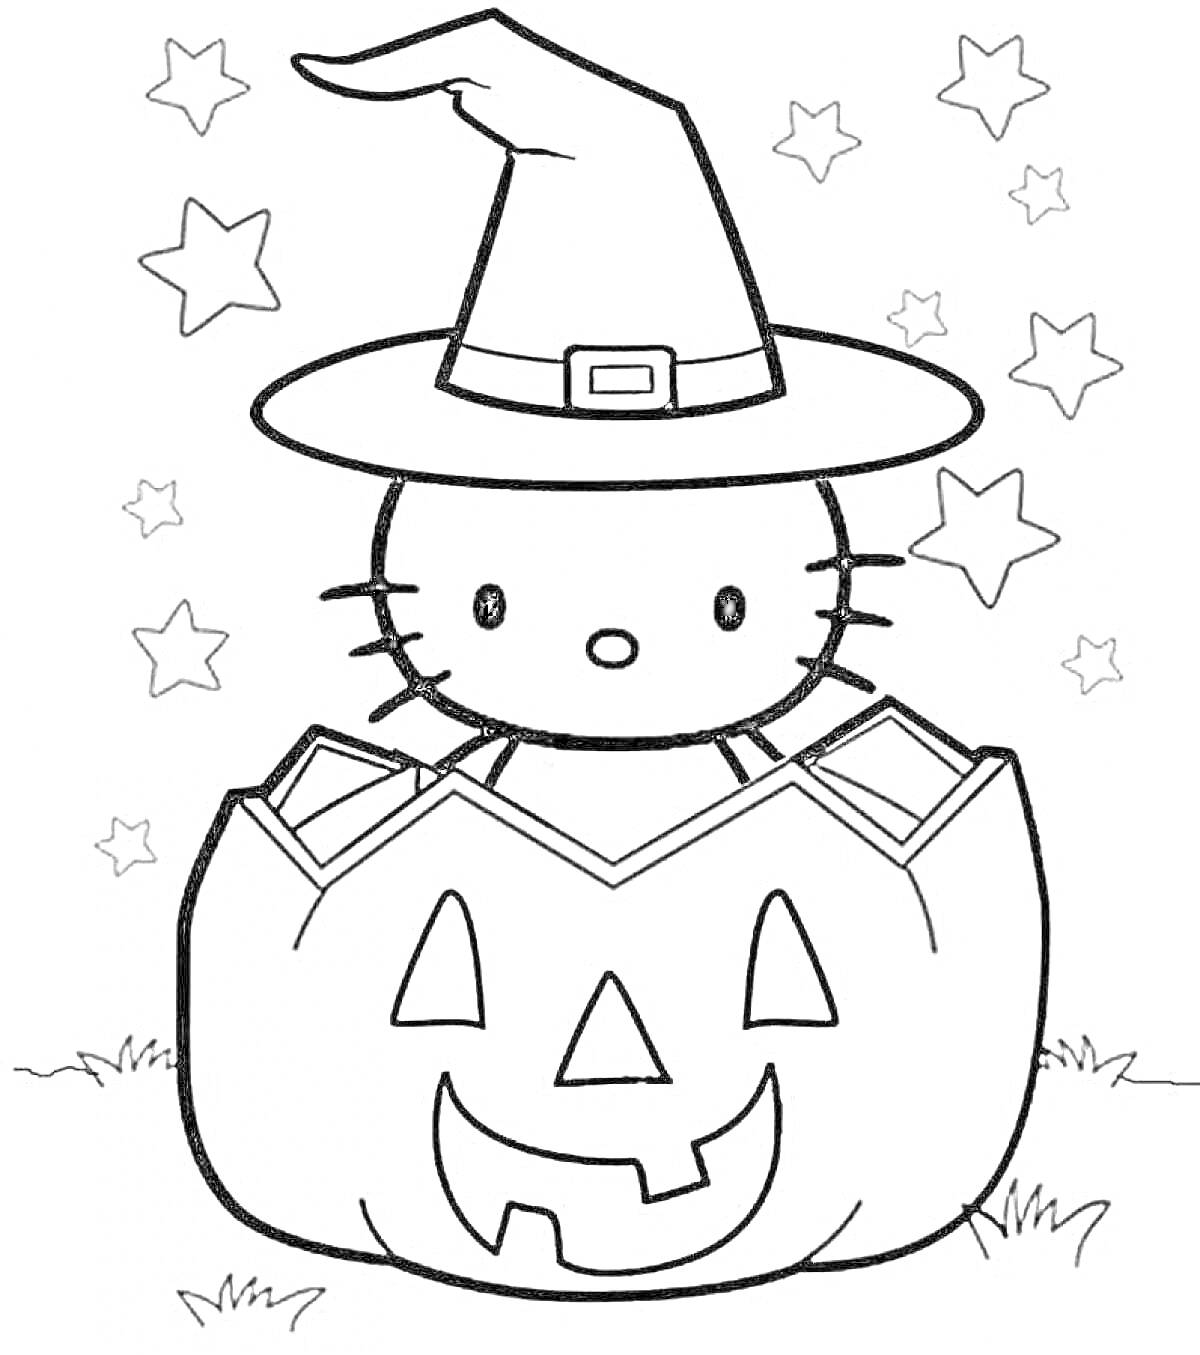 Раскраска Кошка в шляпе ведьмы сидит в тыкве с фонариком, окруженная звездами